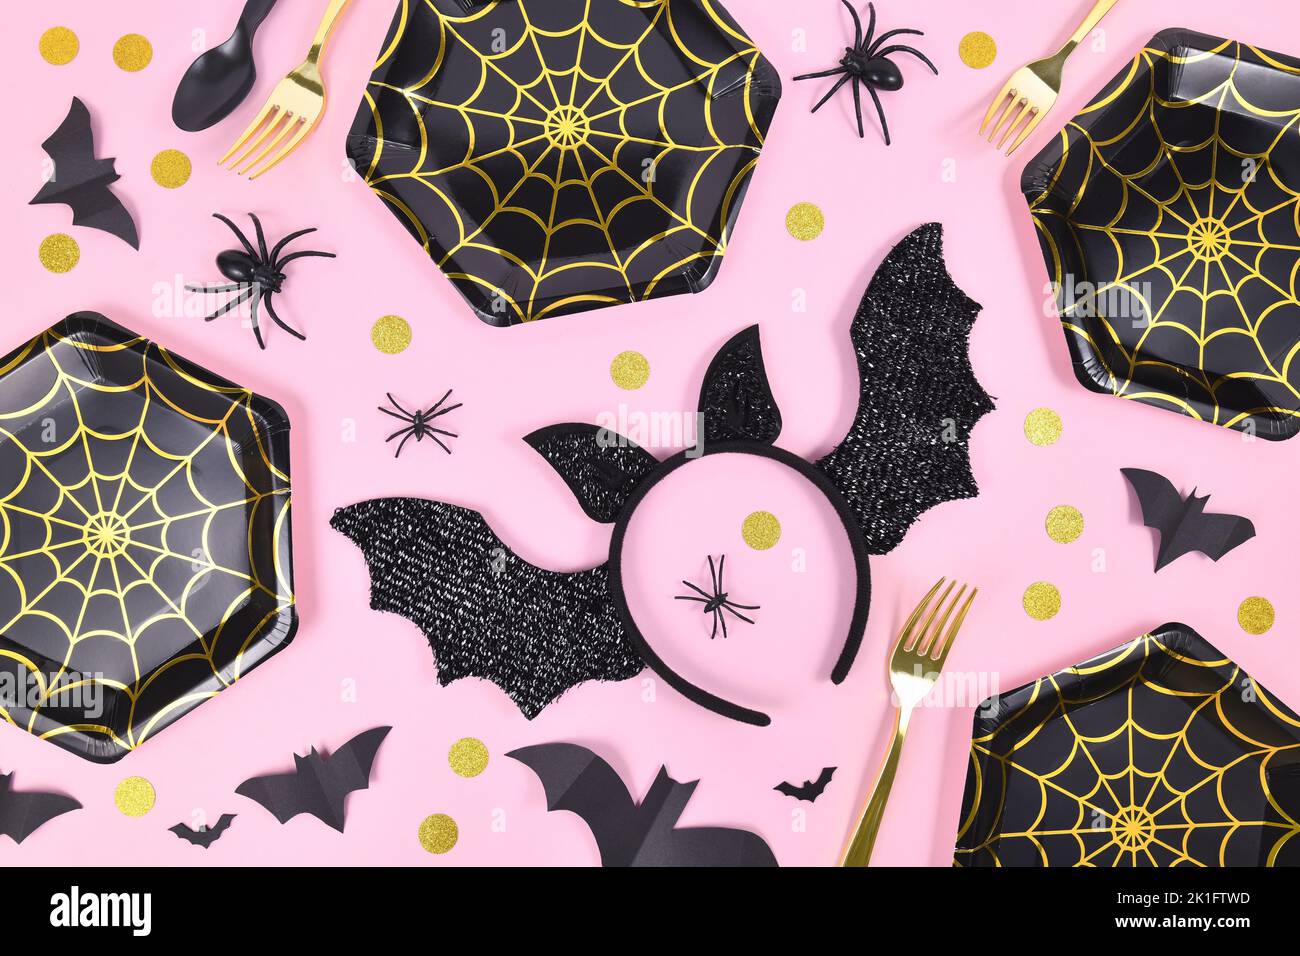 Halloween fiesta plana con negro y oro araña placas de tela, arañas y confeti sobre fondo rosa Foto de stock